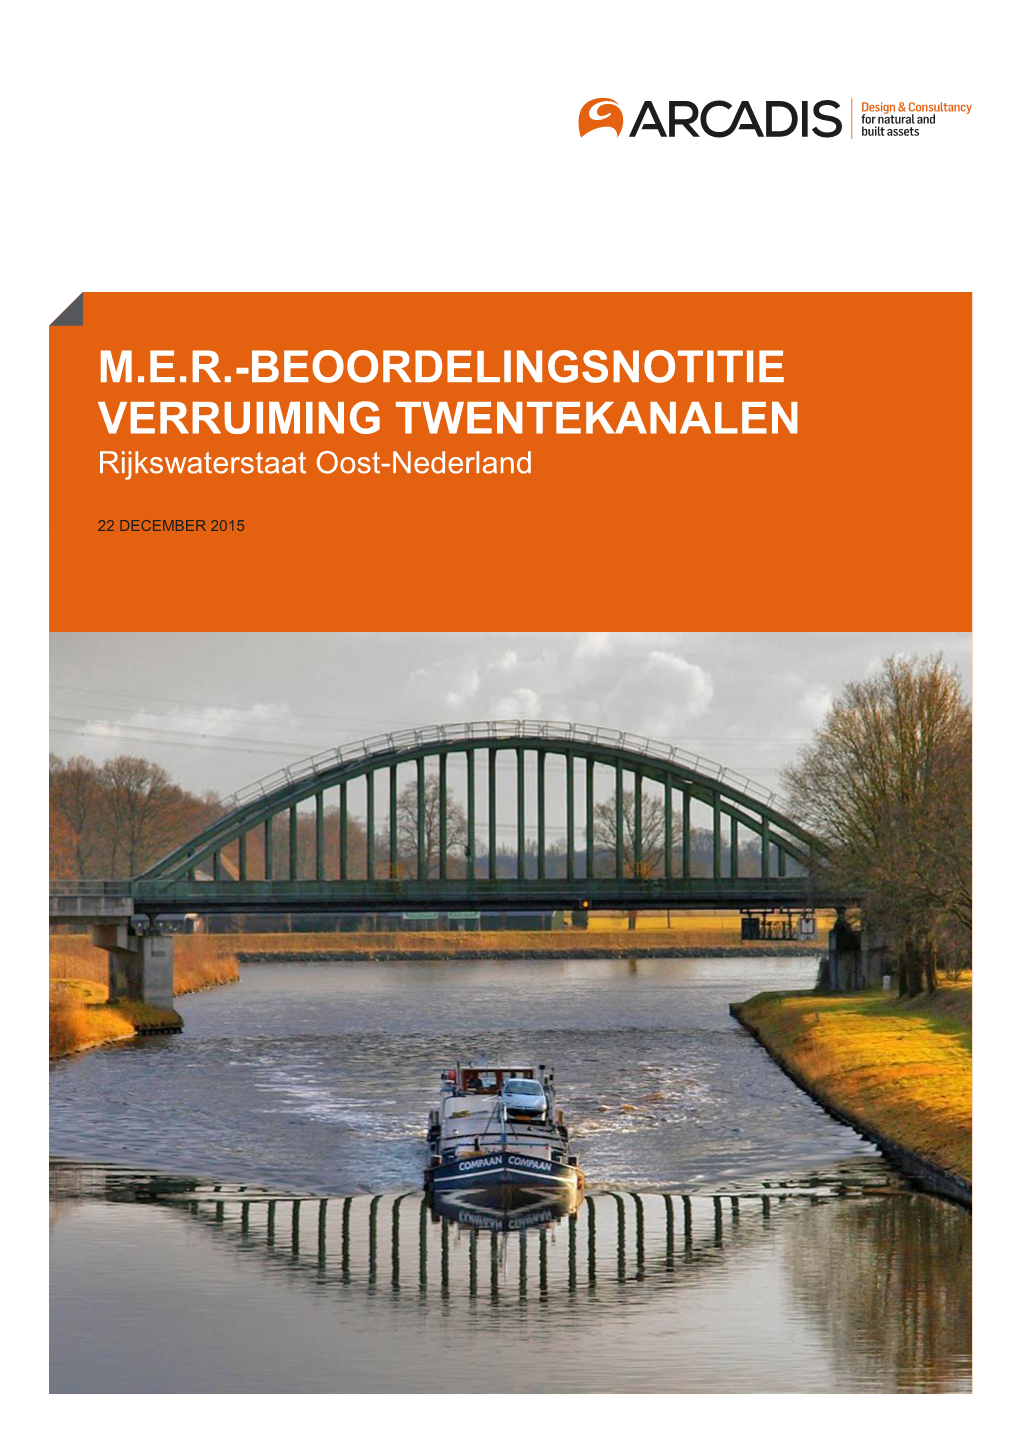 M.E.R.-BEOORDELINGSNOTITIE VERRUIMING TWENTEKANALEN Rijkswaterstaat Oost-Nederland